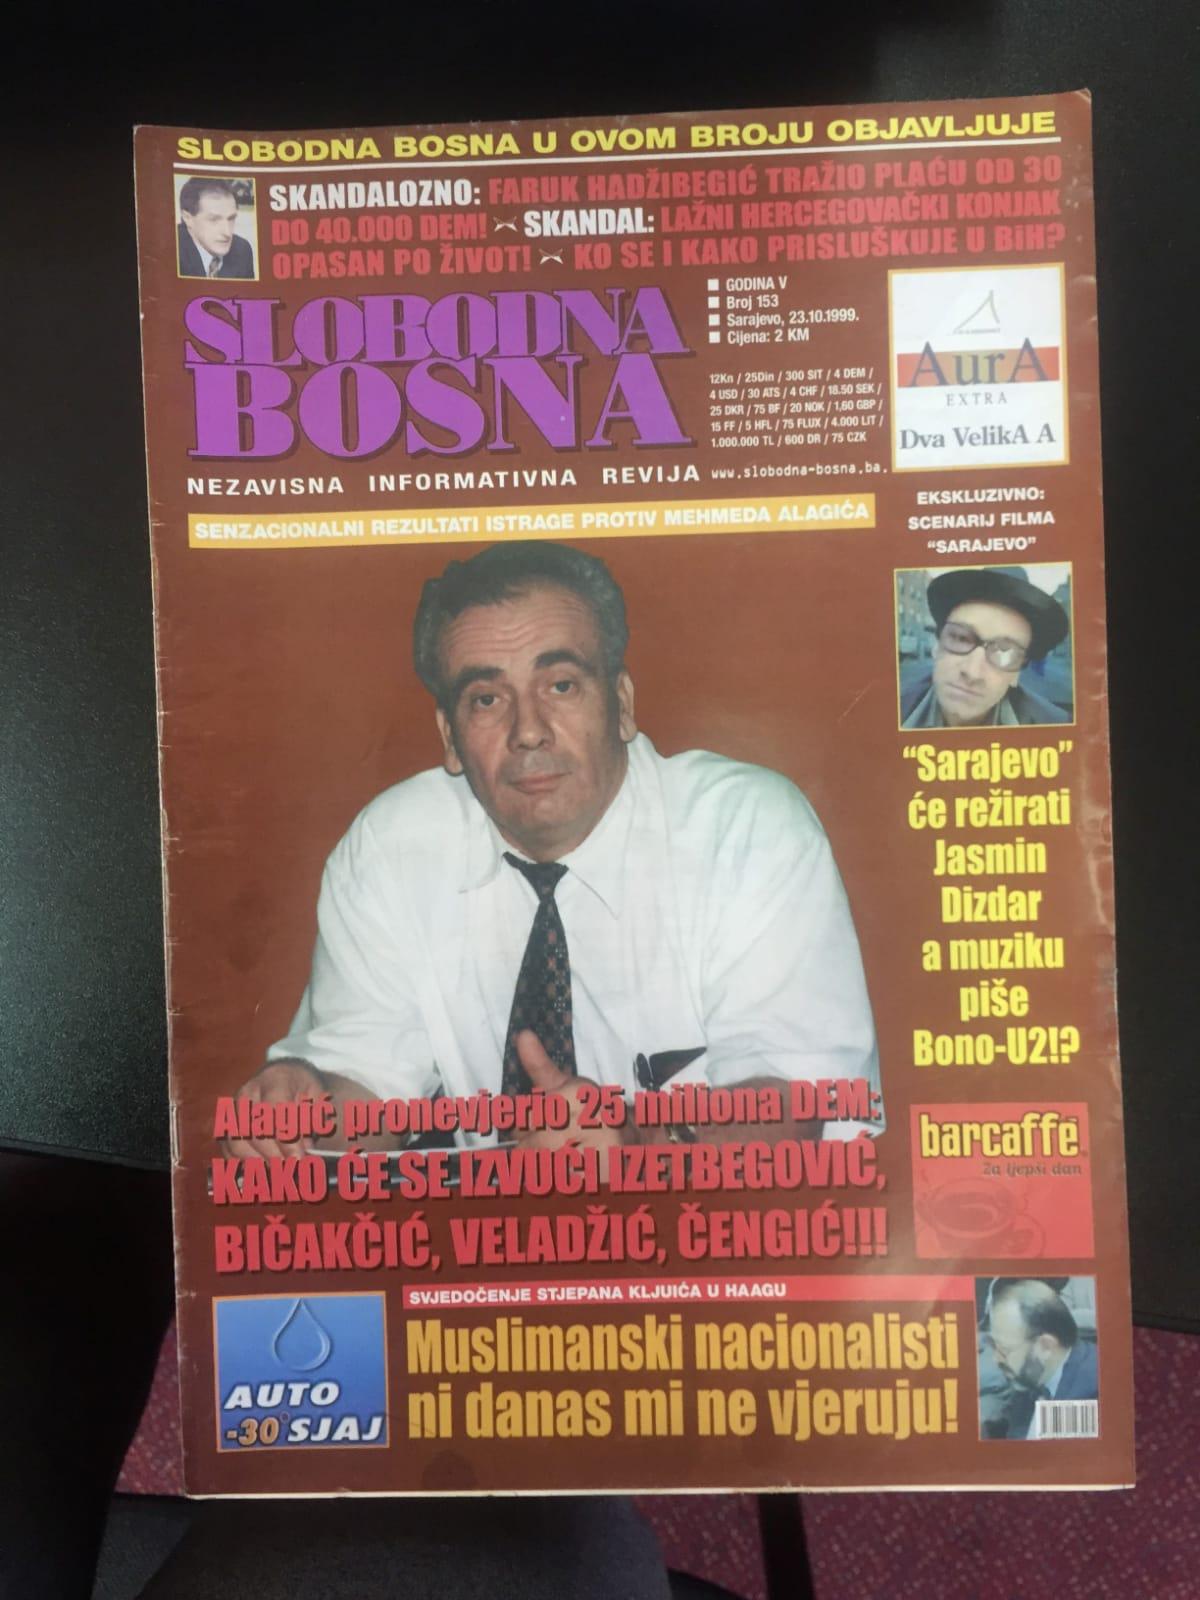 Faksimili Avdićevih tekstova u Slobodnoj Bosni i odgovor Alije Izetbegovića u "Dnevnom avazu" na pitanje ko je finansirao Slobodnu Bosnu - Avaz